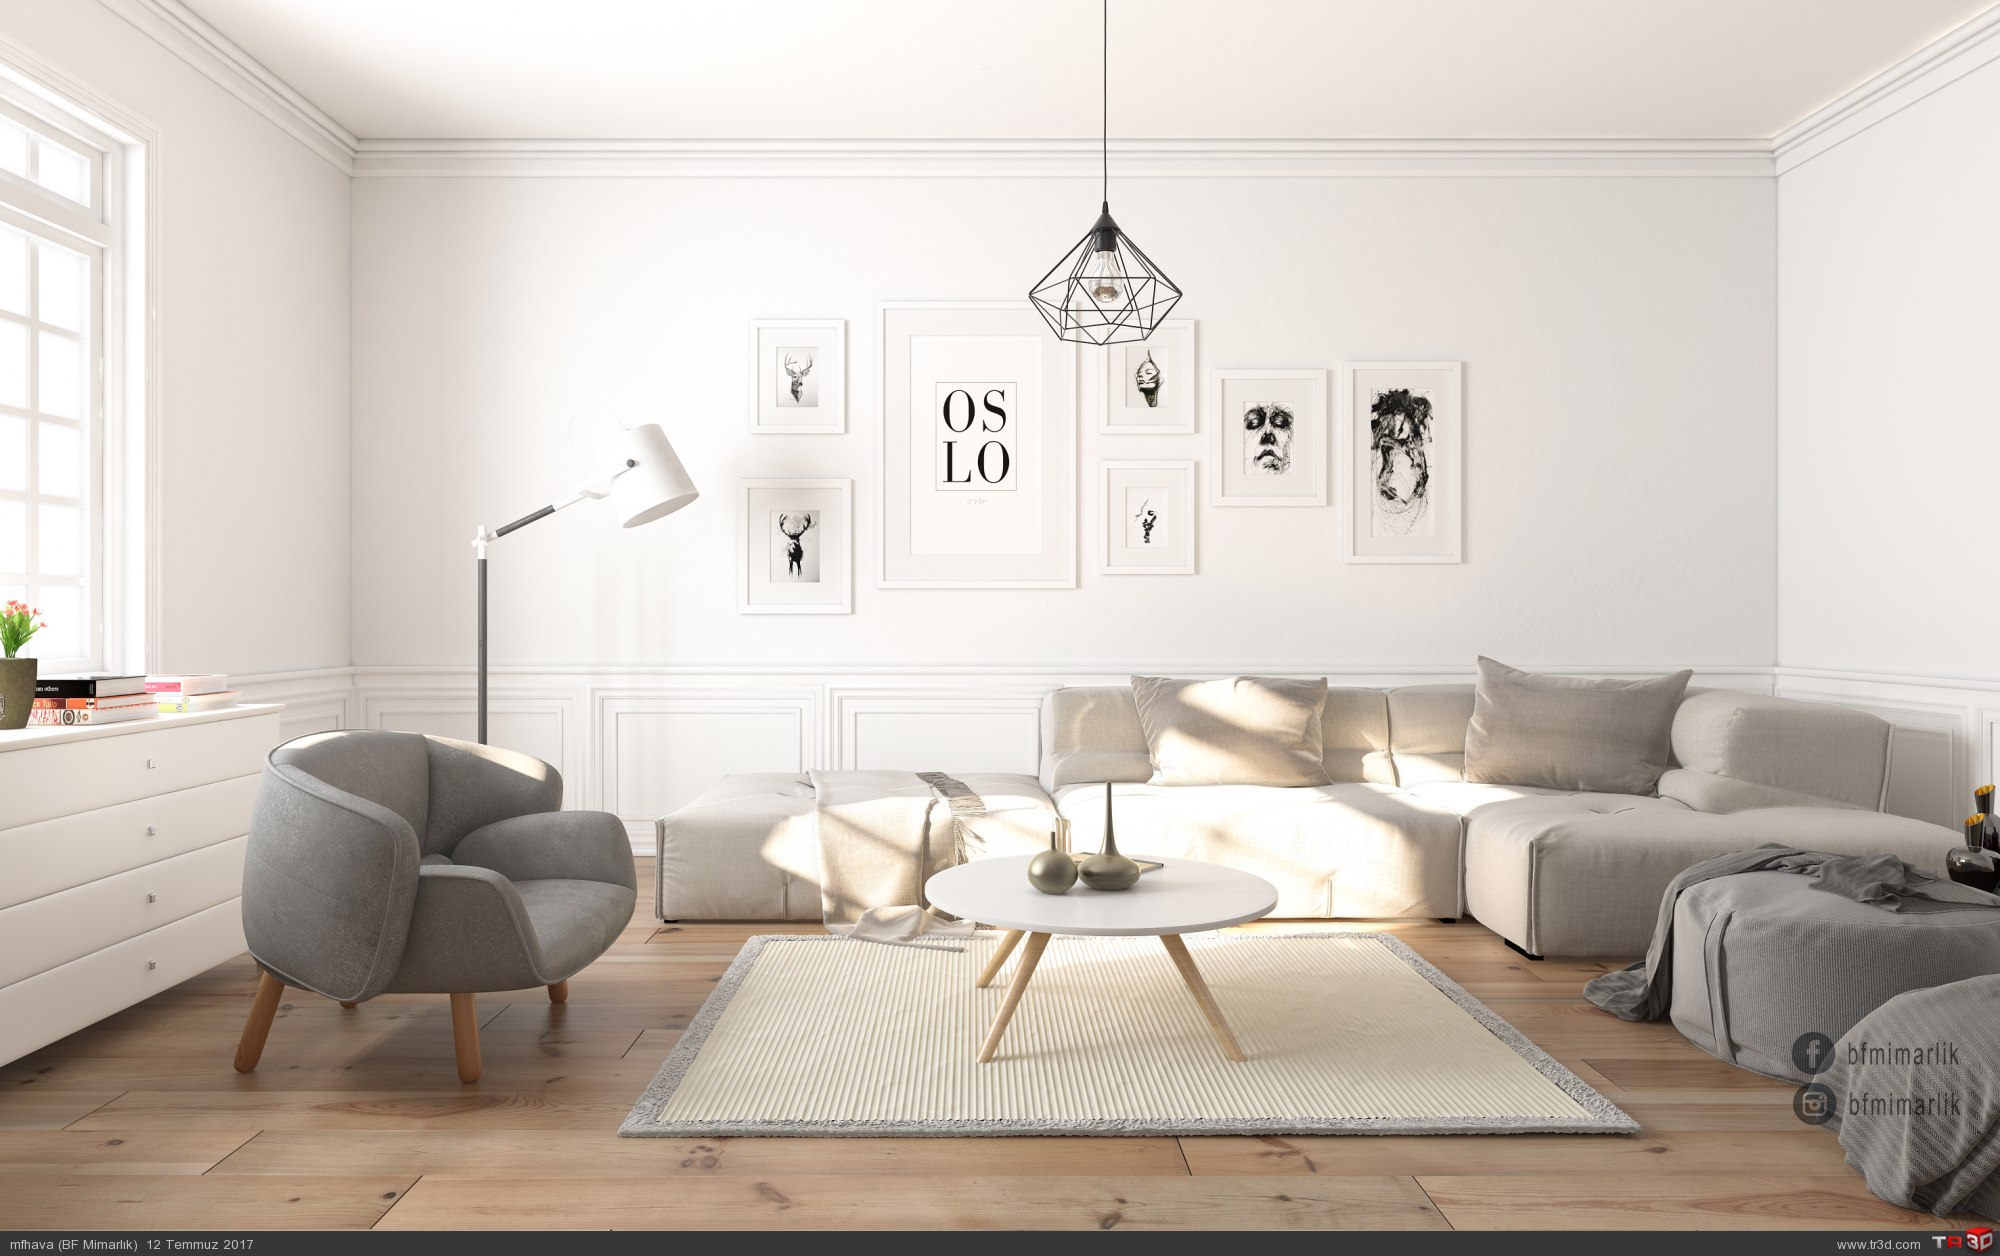 White Living Room